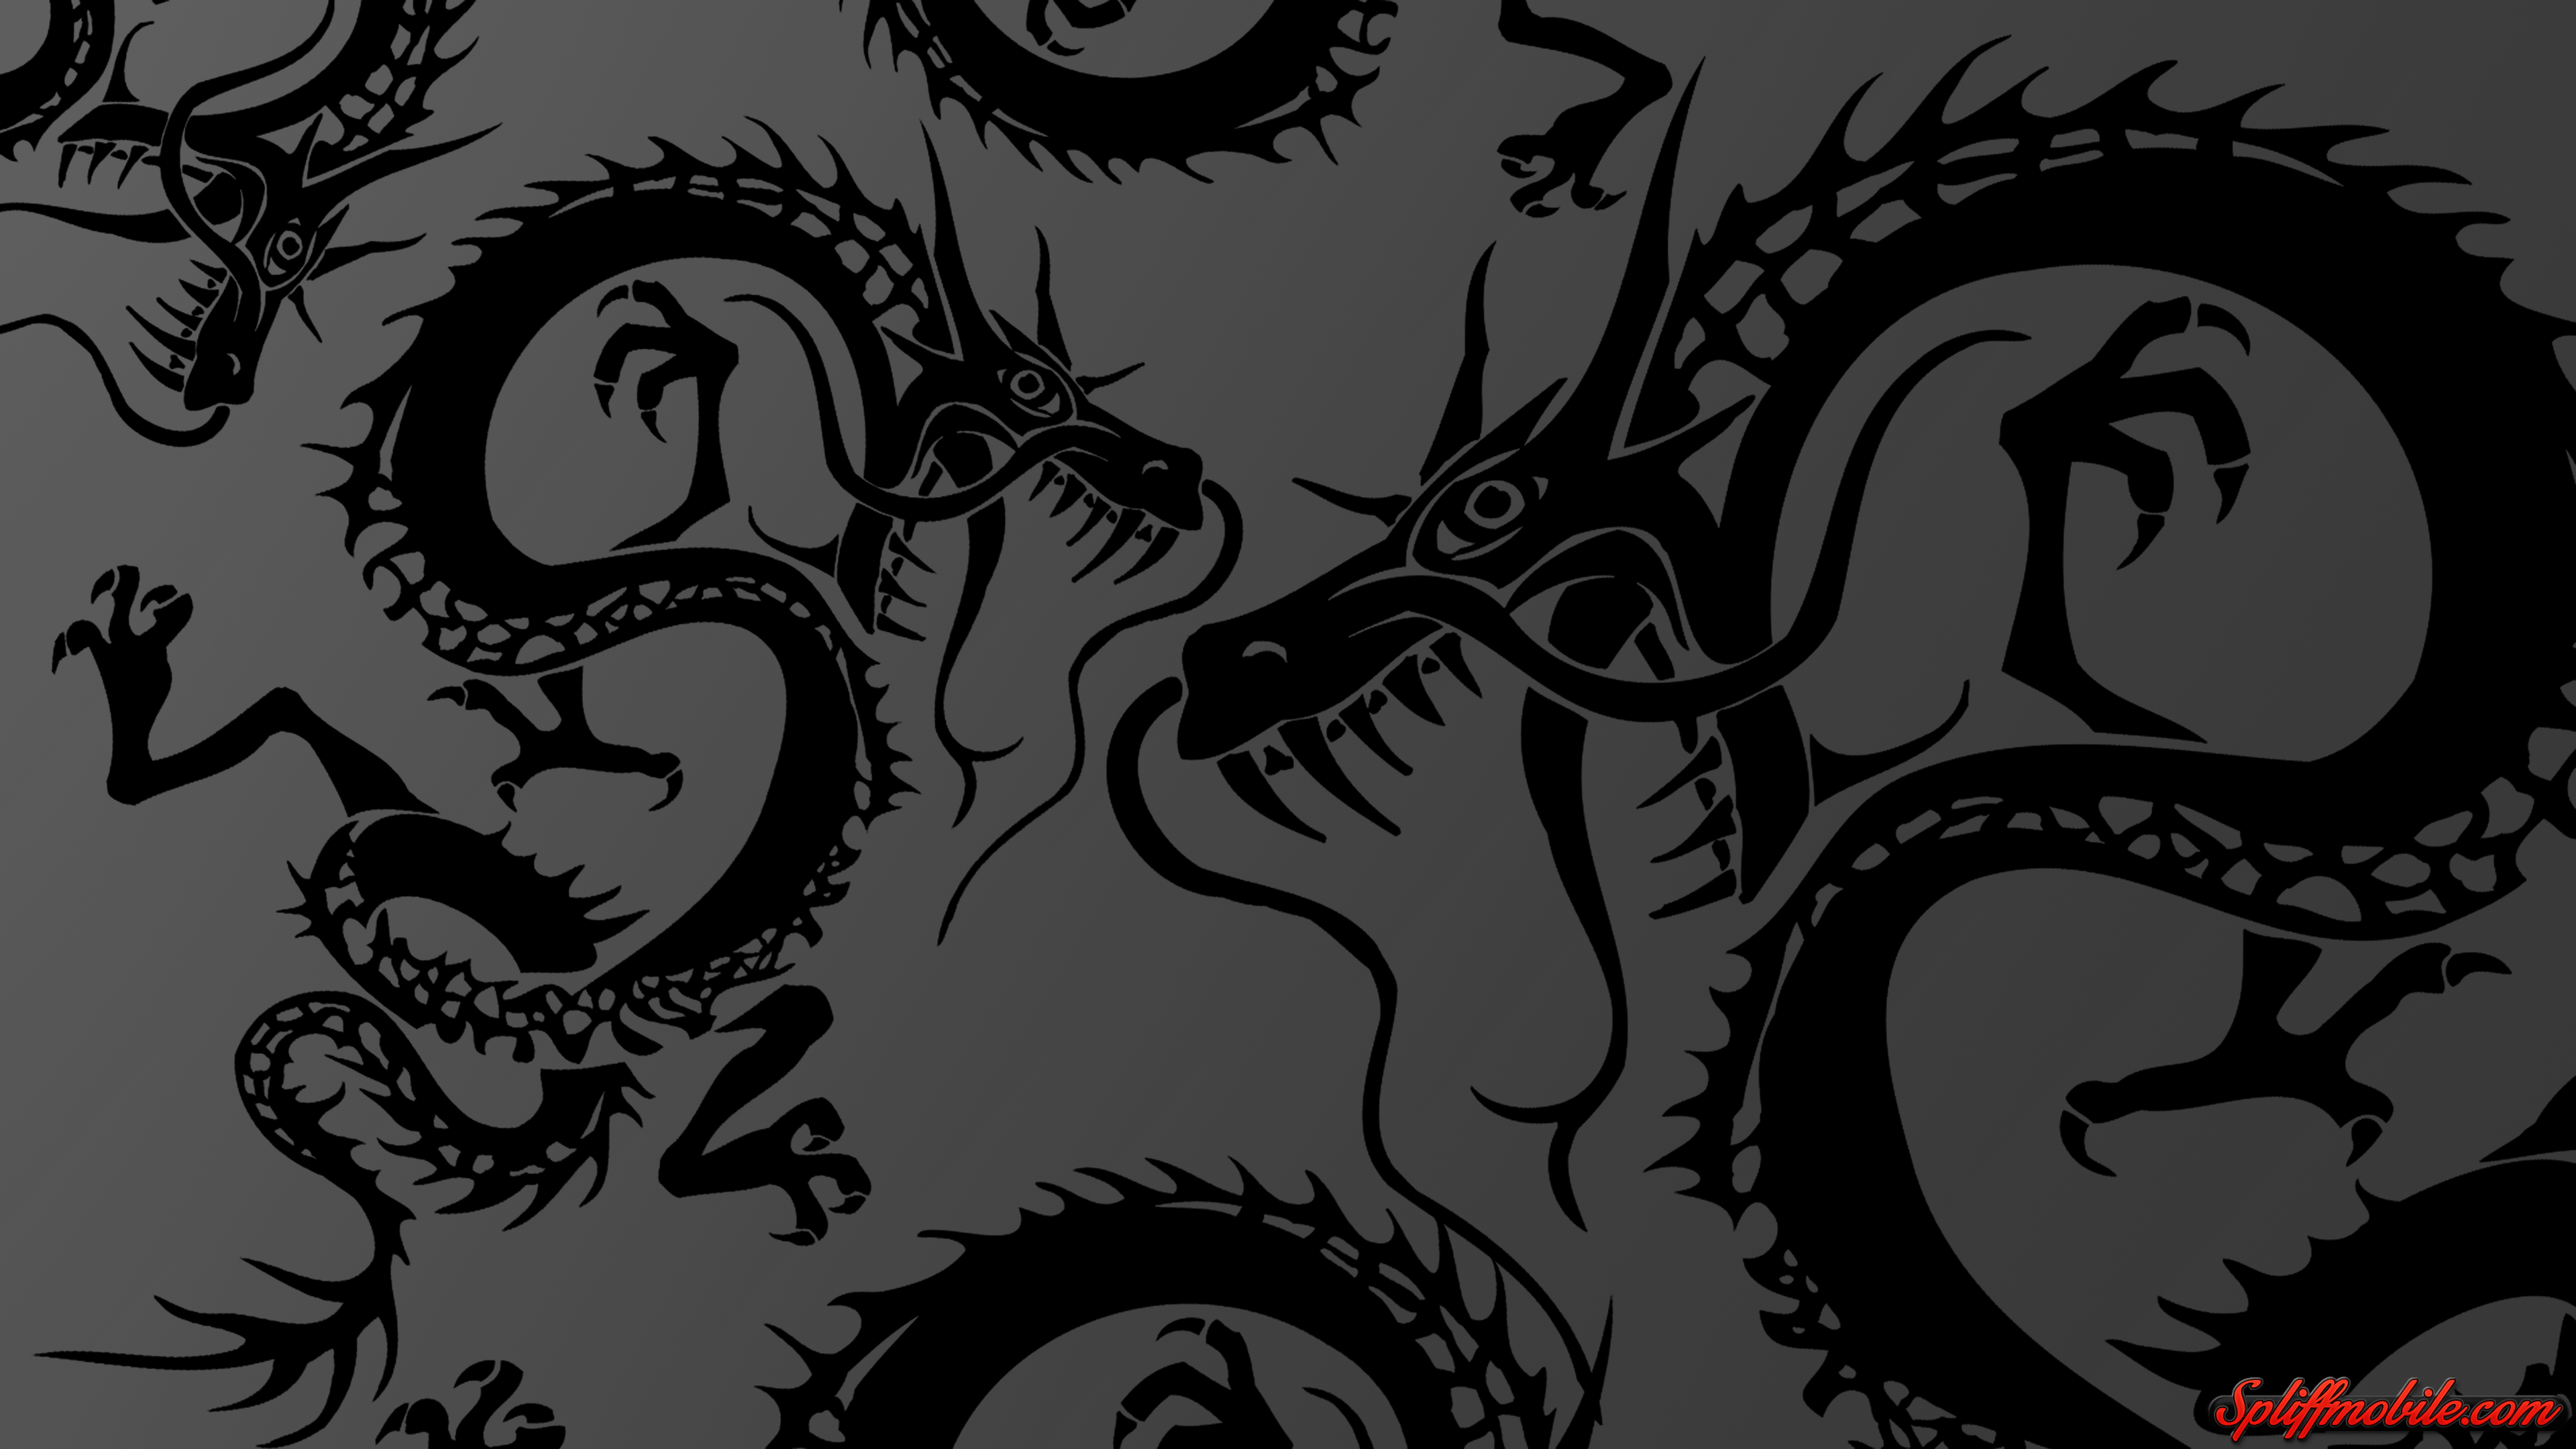 HD Black Dragon Wallpaper